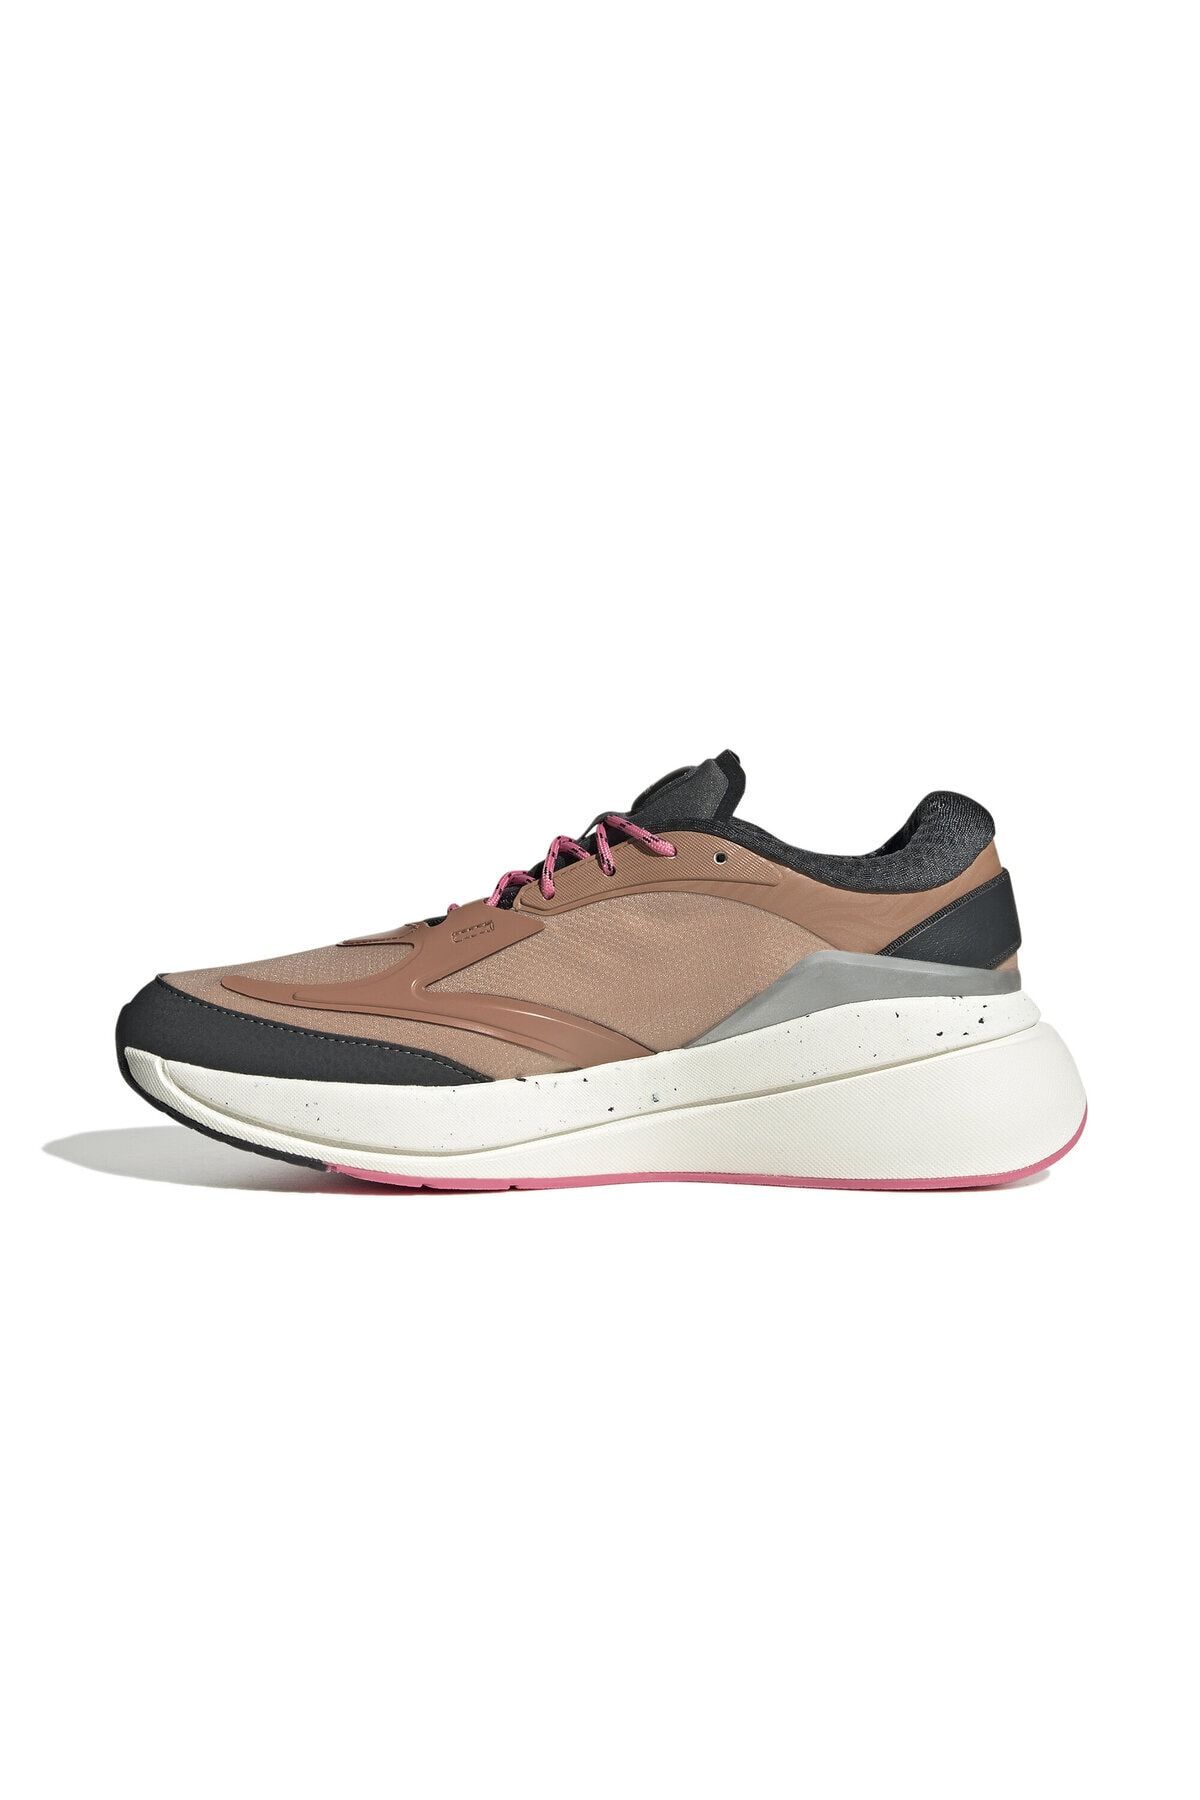 adidas Brevard Kadın Koşu Ayakkabısı HQ1701 Renkli